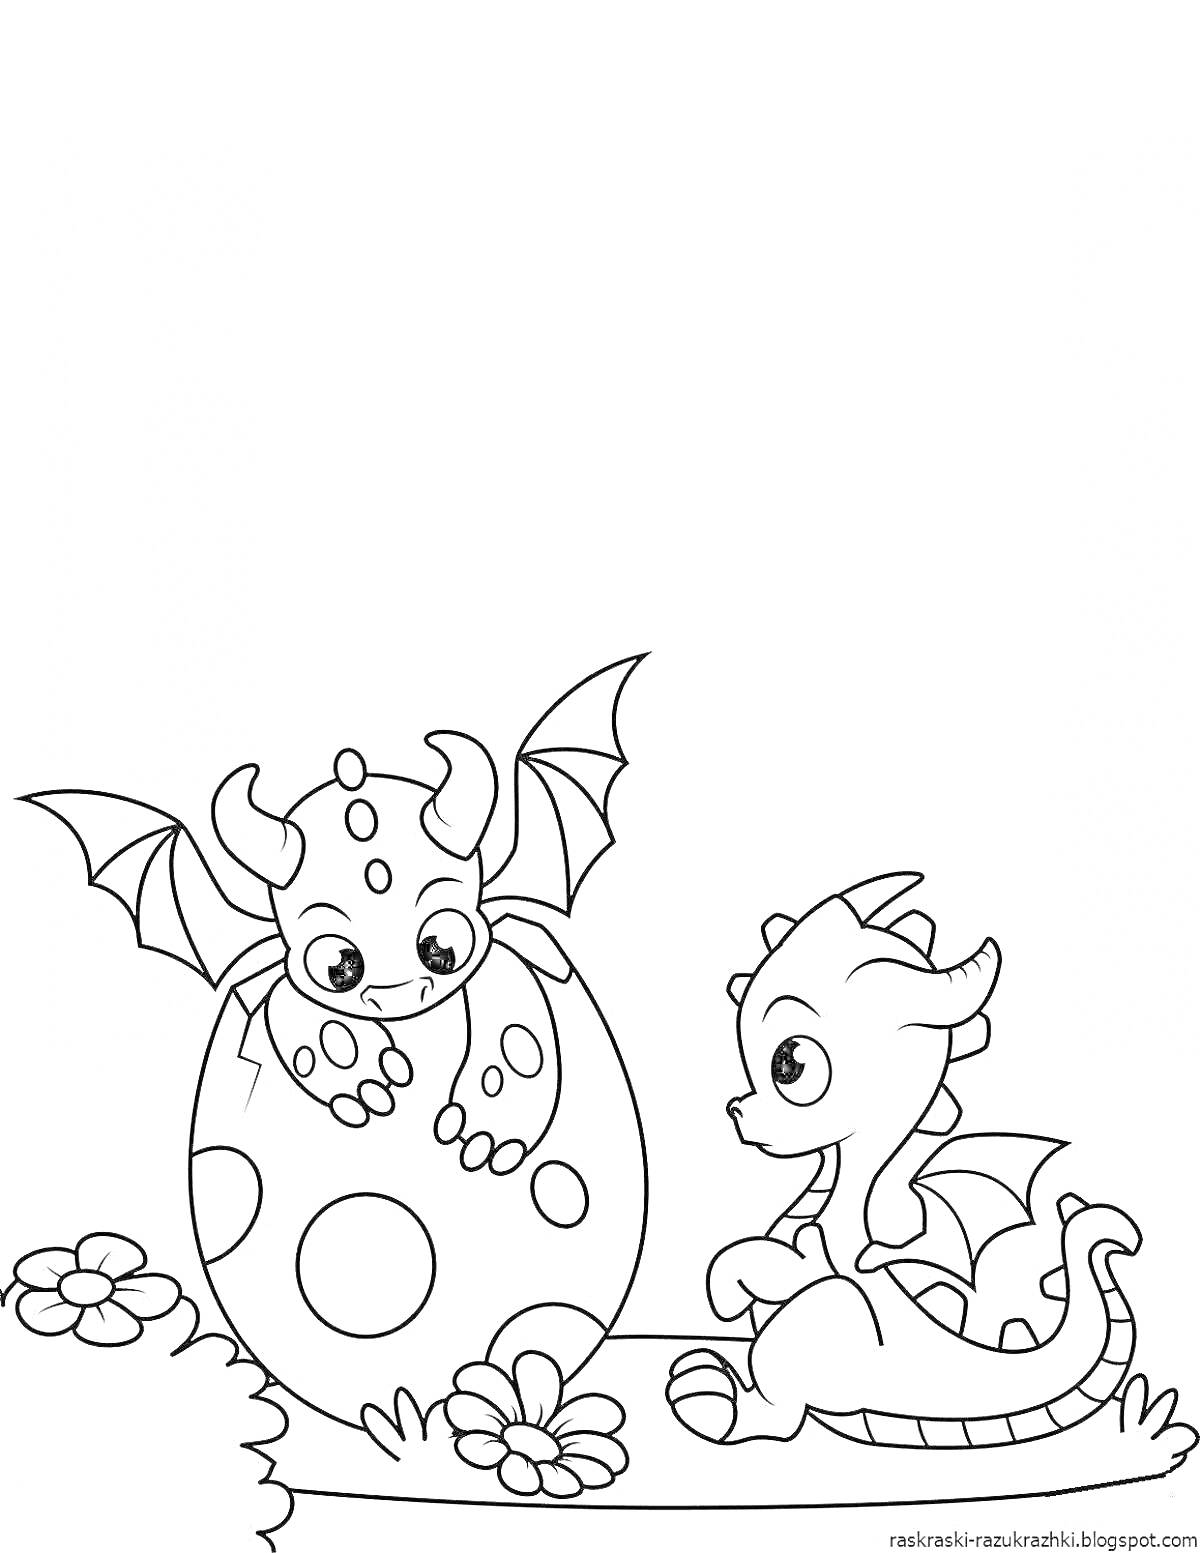 Раскраска Два маленьких дракончика, один из которых вылупляется из яйца, на лугу с цветами и травой